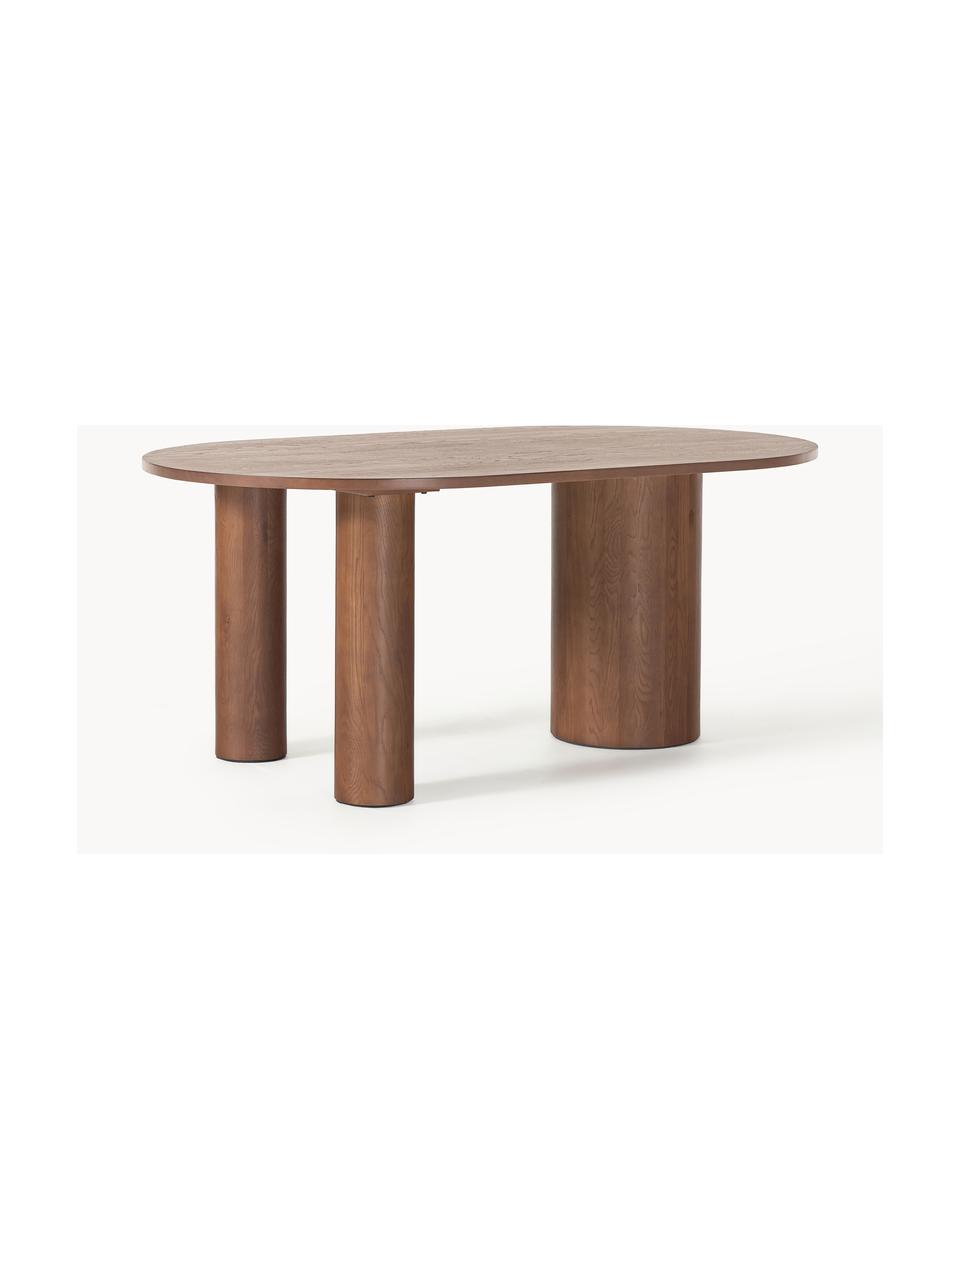 Oválný jídelní stůl z dubového dřeva Dunia, 180 x 110 cm, Masivní dubové dřevo, olejované

Tento produkt je vyroben z udržitelných zdrojů dřeva s certifikací FSC®., Dubové dřevo, hnědě olejované, Š 180 cm, H 110 cm